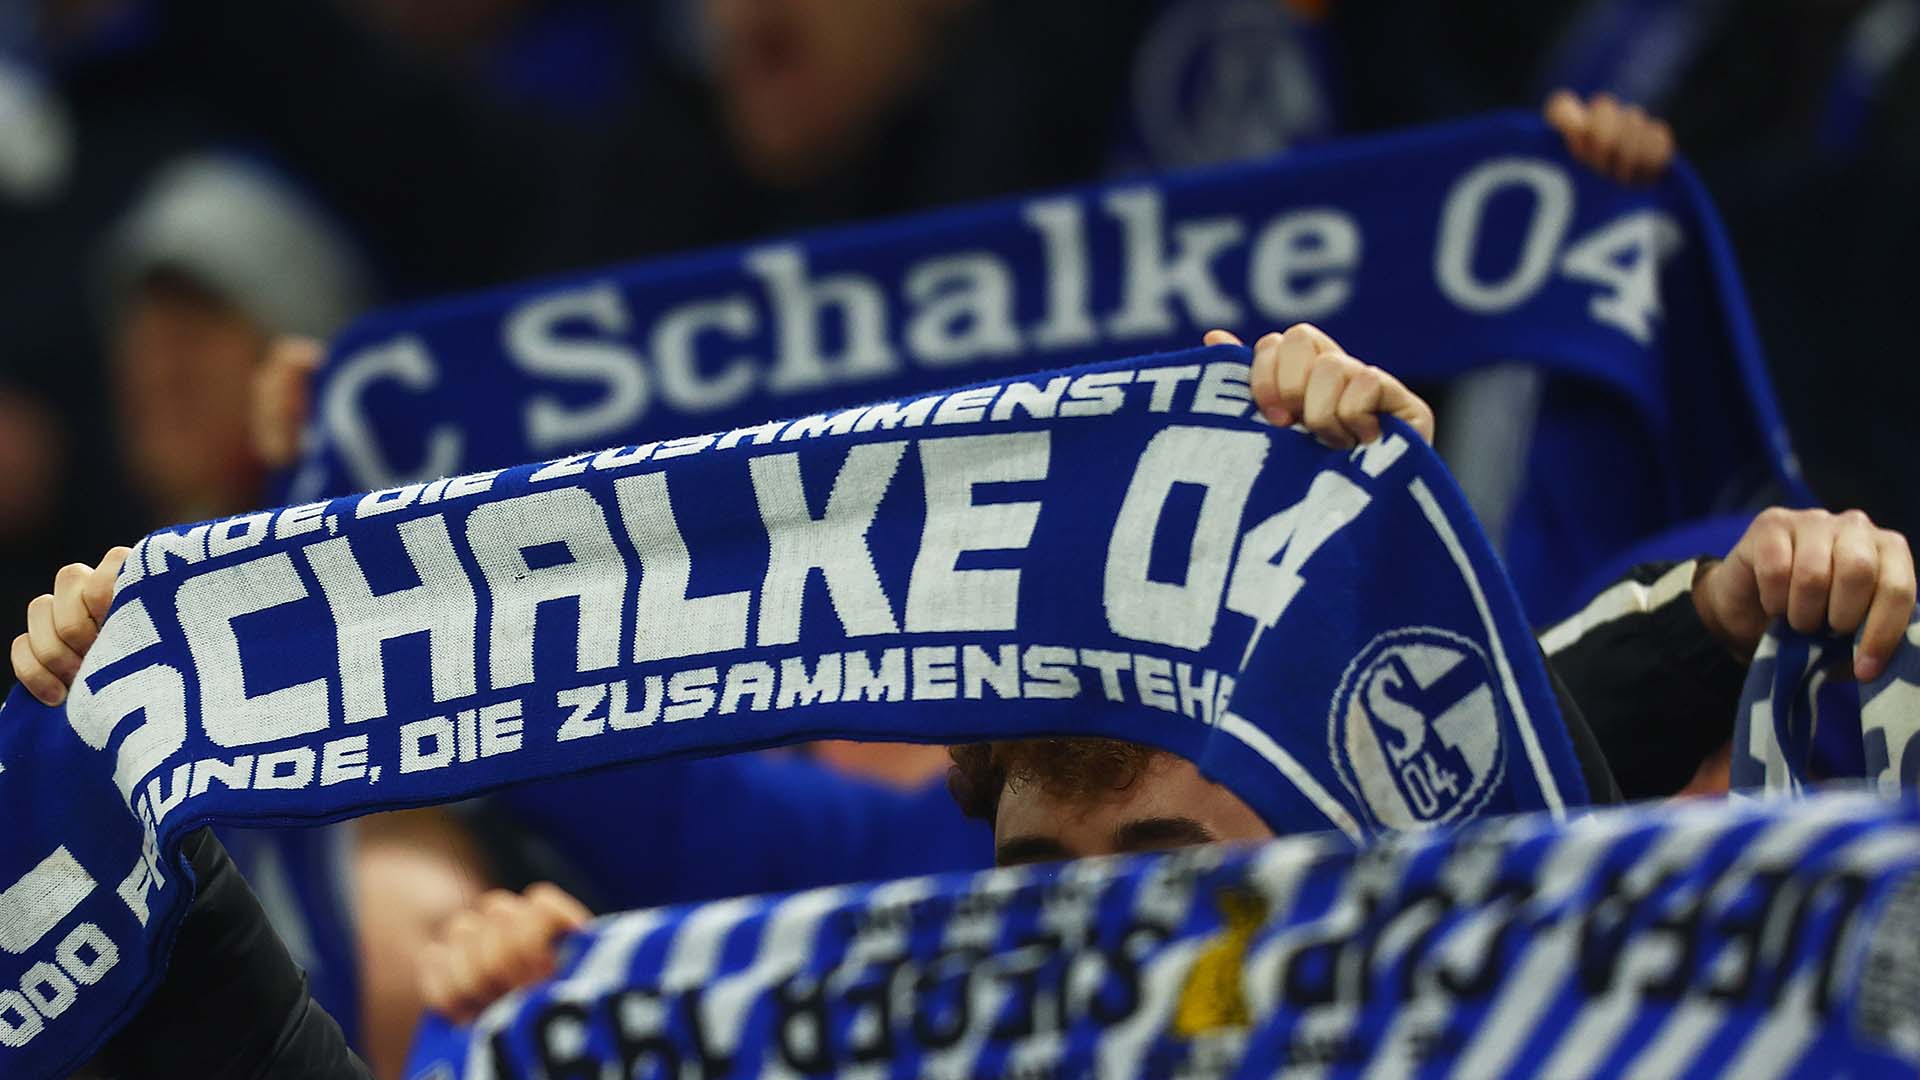 El gran problema radica en los estatutos de la tercera categoría en Alemania. Muy a diferencia de Bundesliga1 y Bundesliga2, que son operadas por una federación liguera propia (DFL), el órgano responsable de la liga profesional más baja del país es la federación alemana de fútbol (DFB) y la normativa con respecto al endeudamiento tolerado es bastante más estricta, por lo que el Schalke, al no cumplir con dicho criterio, terminaría siendo delegado a cuarta división.